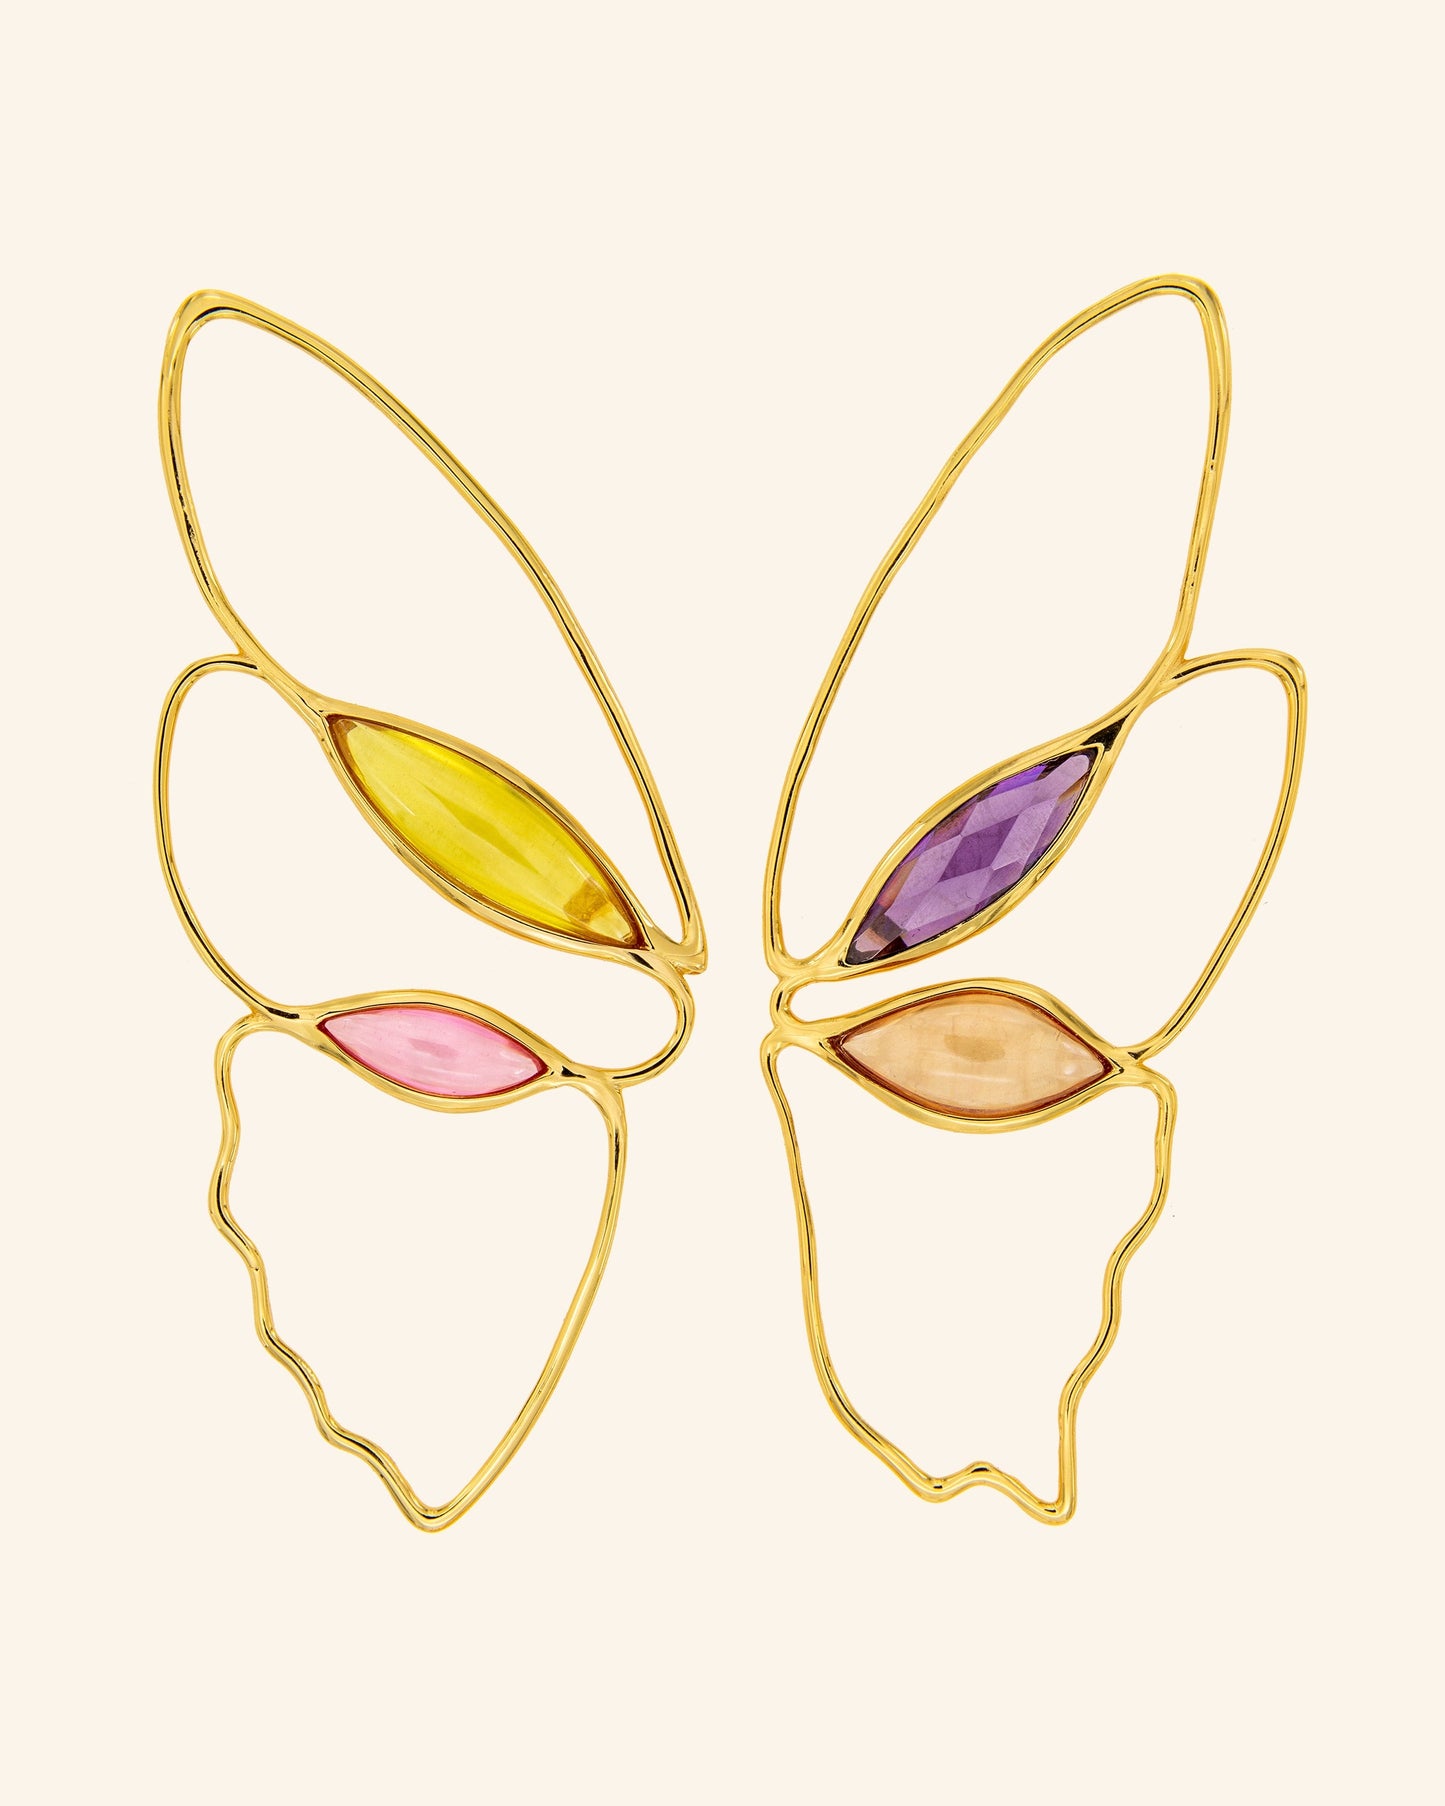 Butterfly effect earrings right side